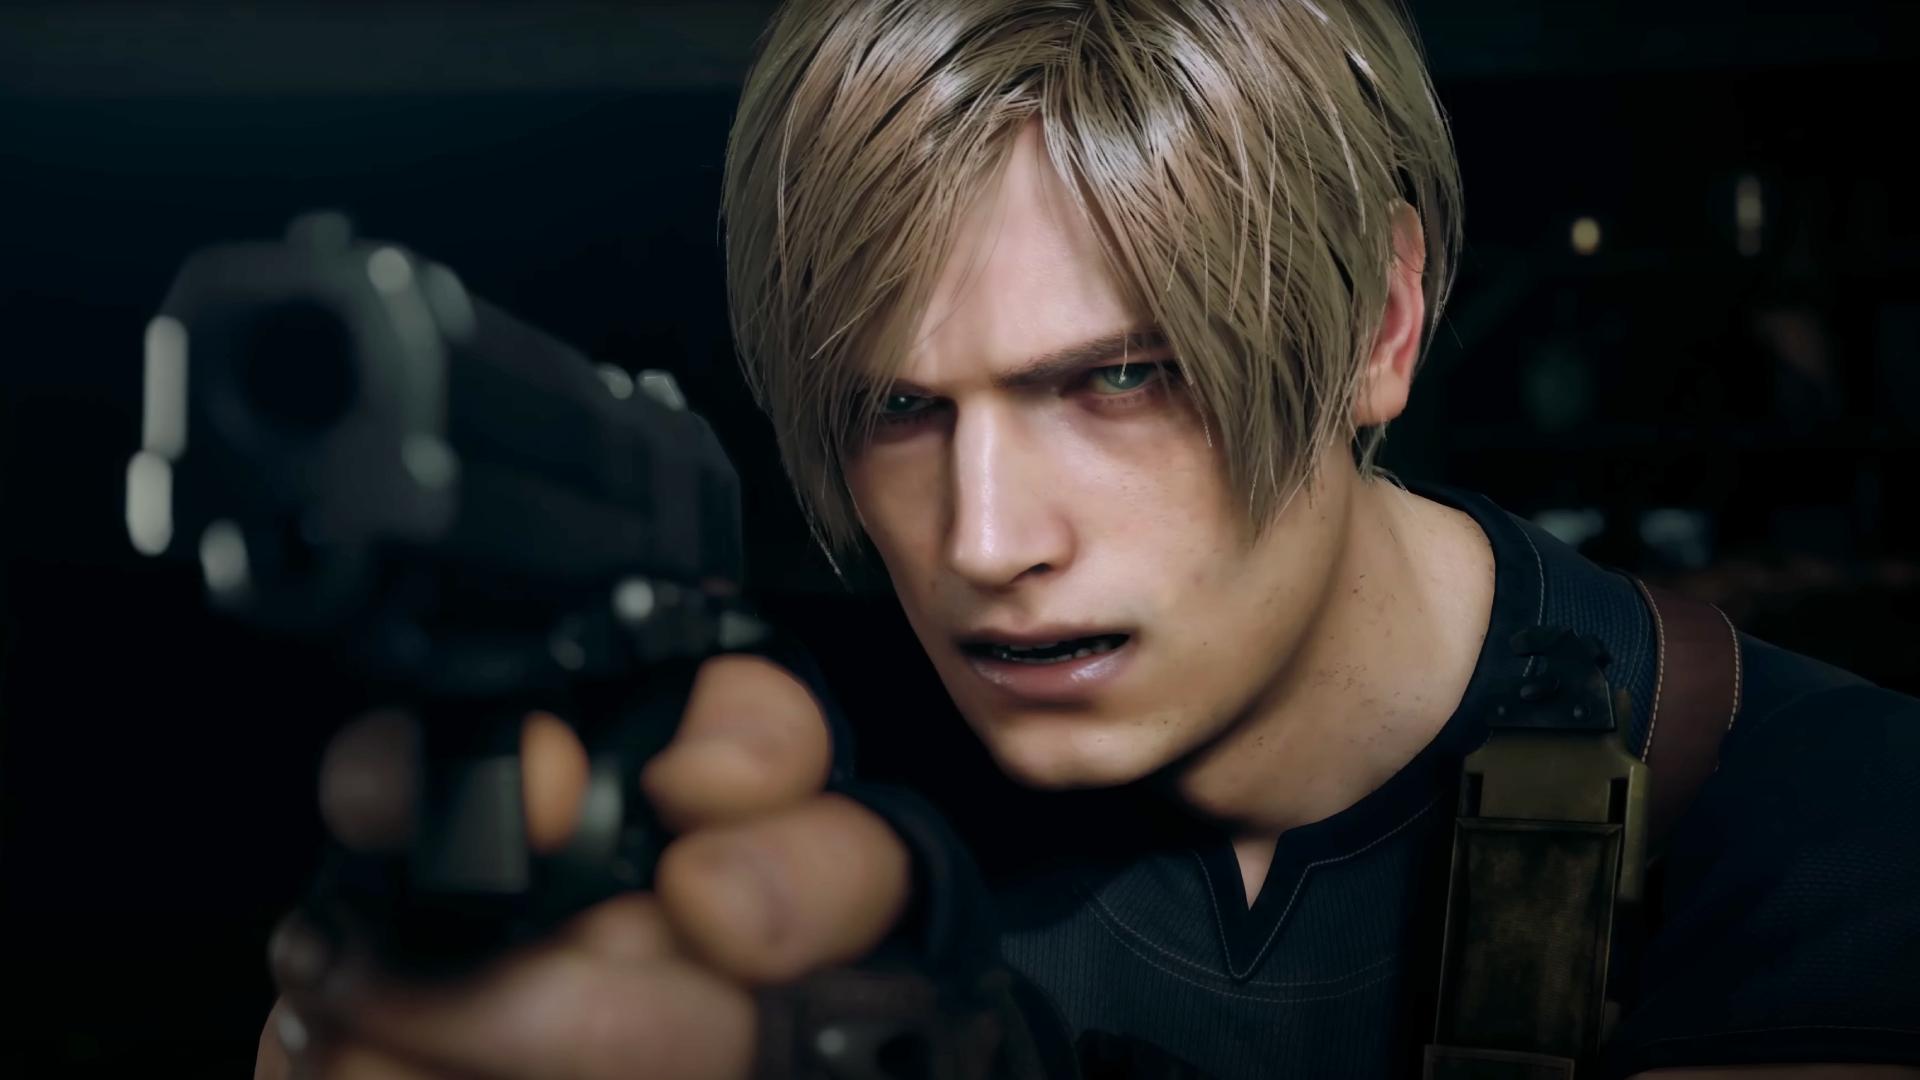 Resident Evil 4 Remake - Playing as Ada Wong Gameplay 